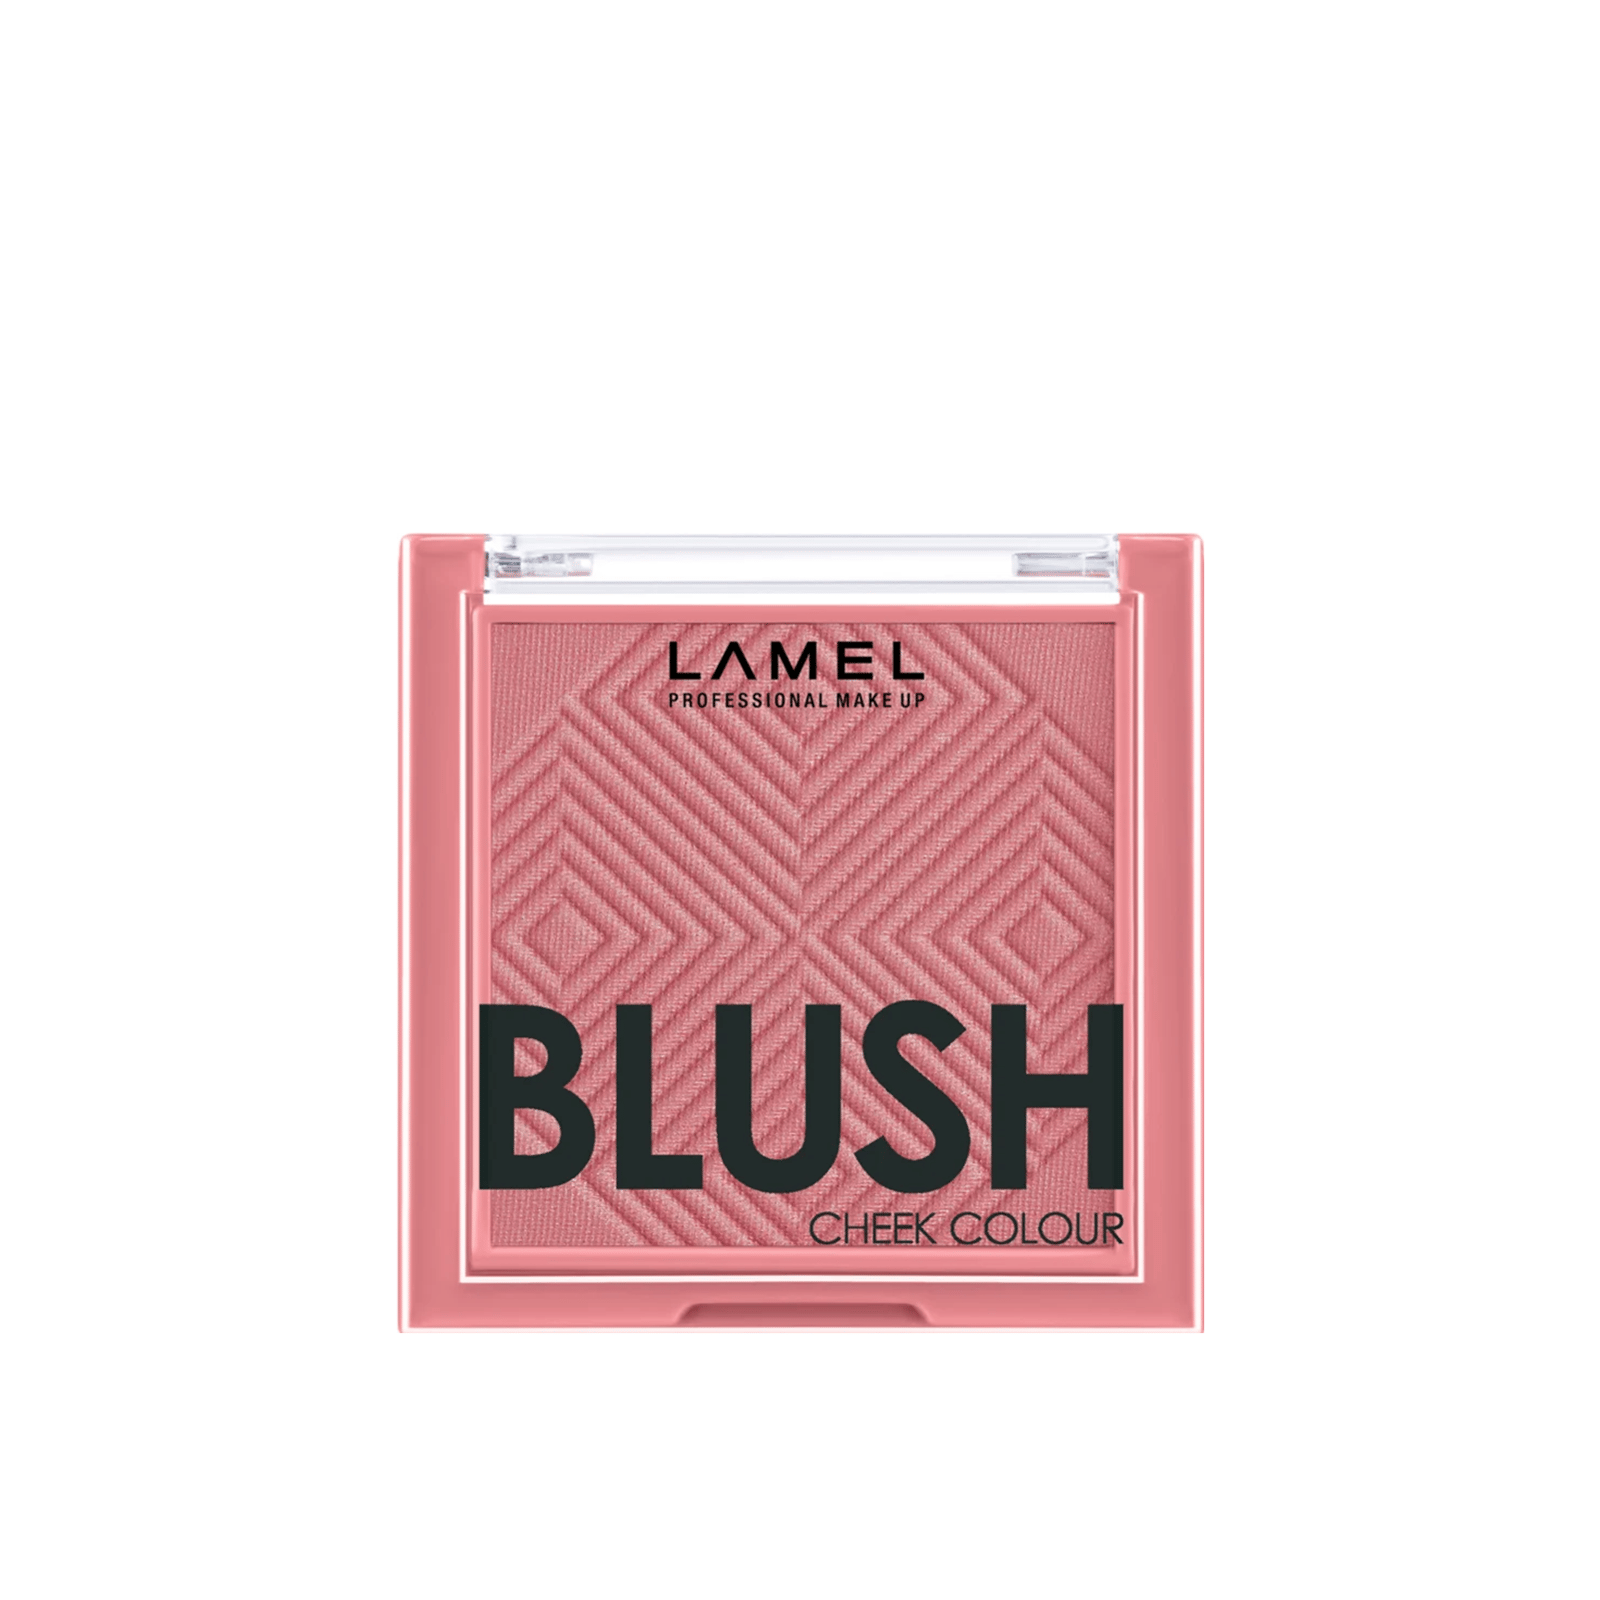 Lamel Blush Cheek Colour 405 Pink 3.8g (0.13oz)